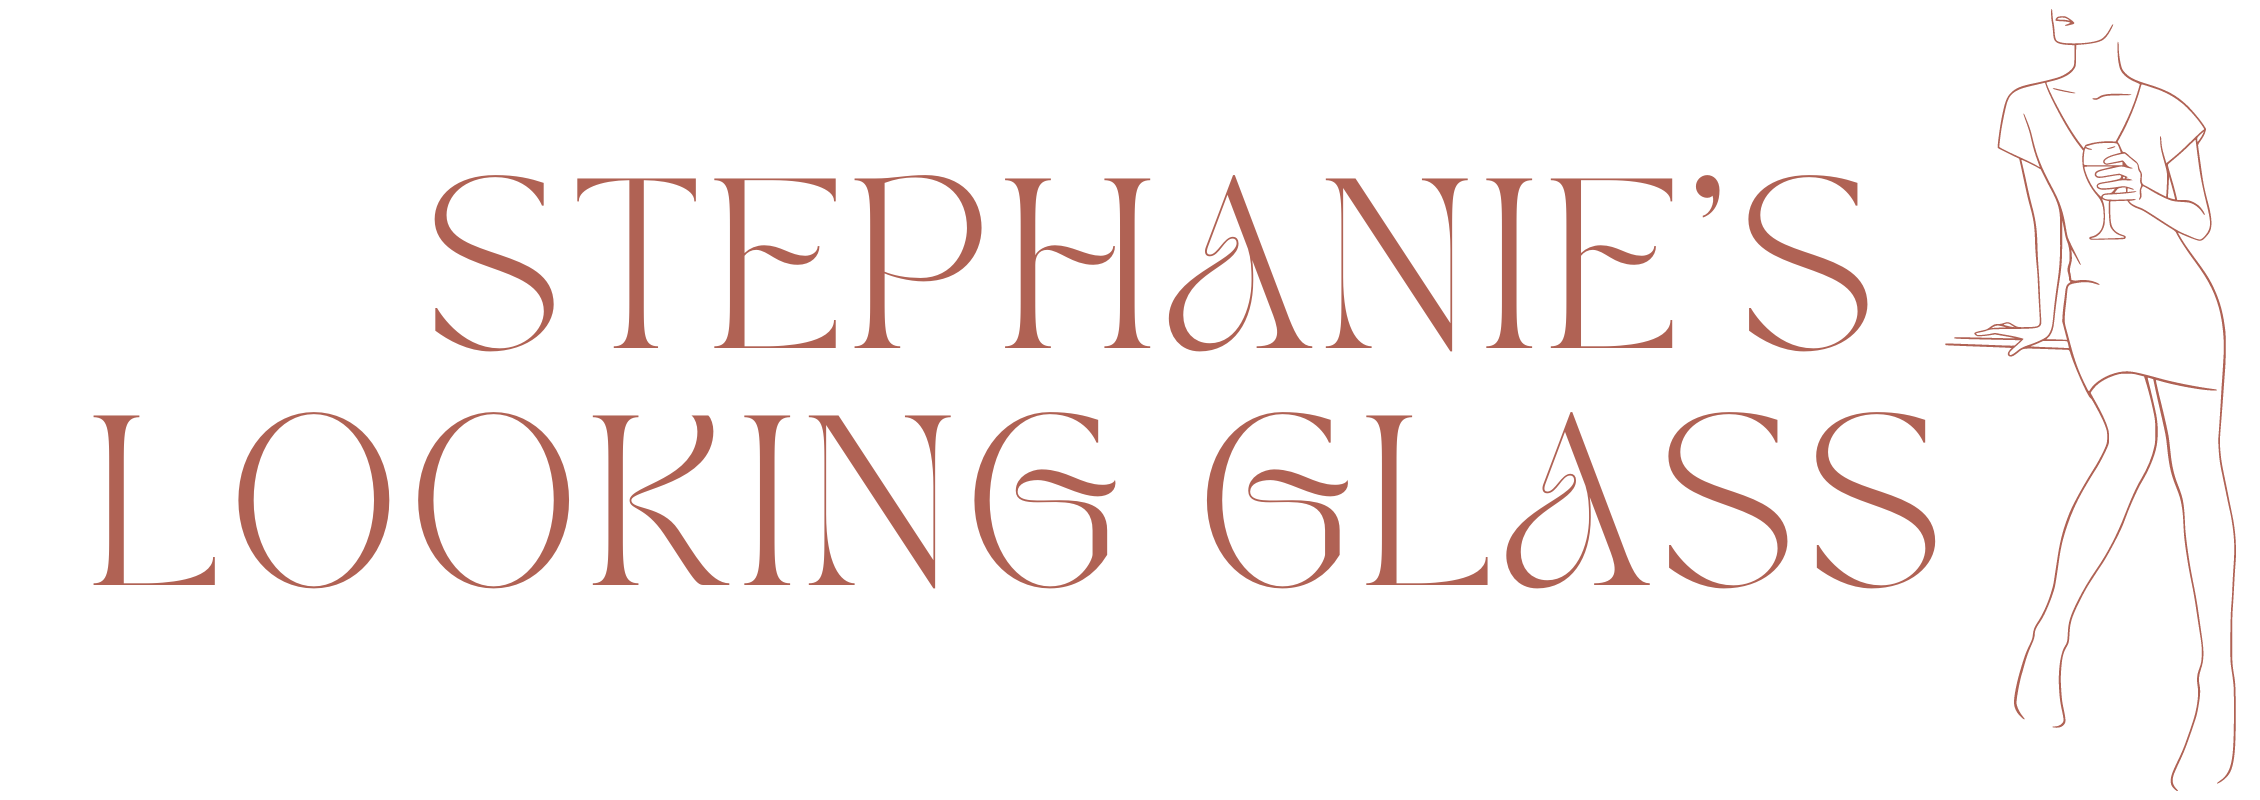 Stephanie’s Looking Glass